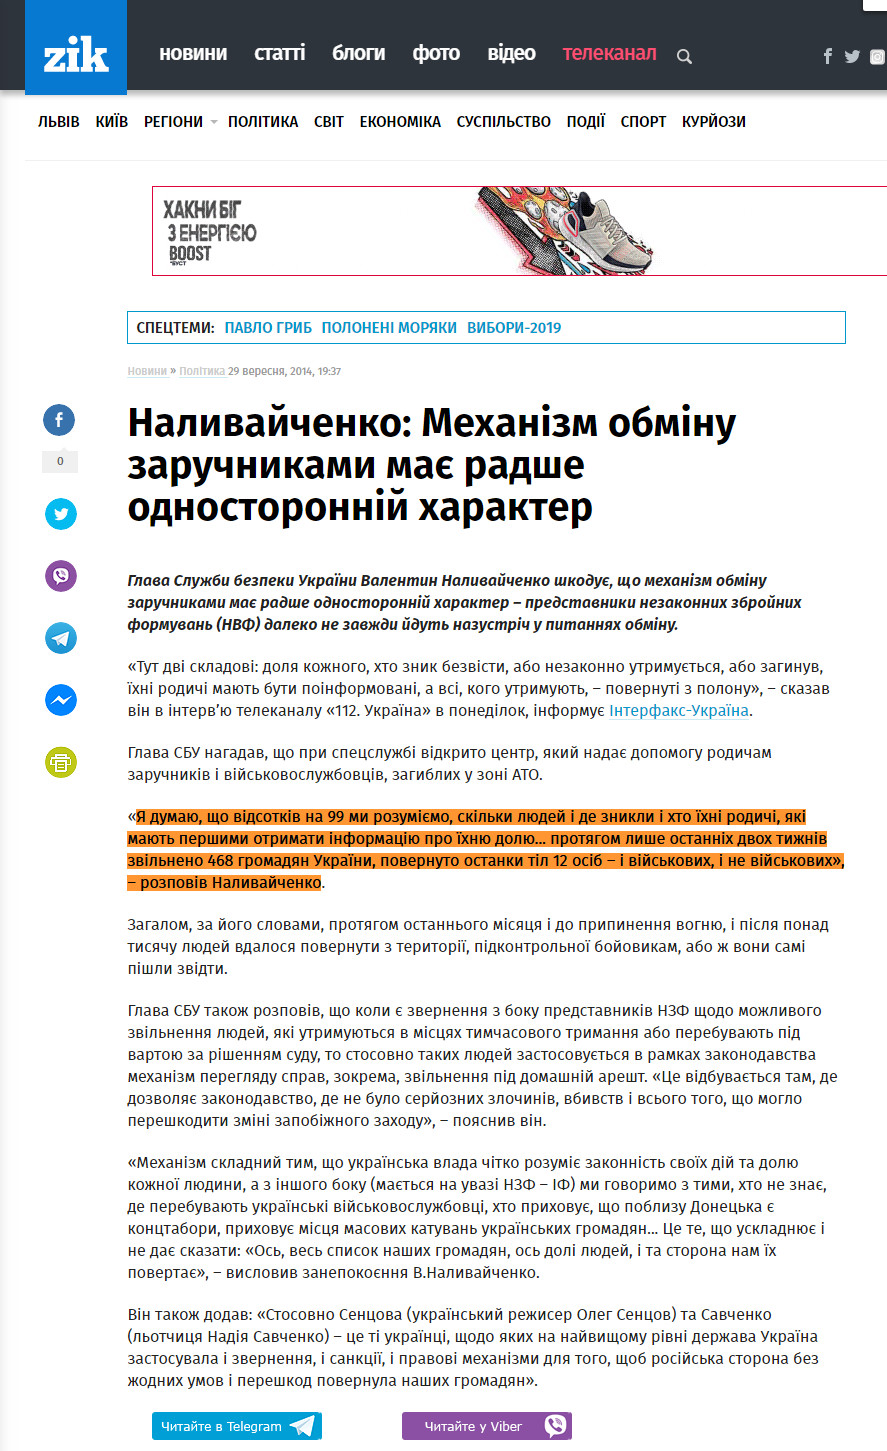 https://zik.ua/news/2014/09/29/nalyvaychenko_mehanizm_obminu_zaruchnykamy_maie_radshe_odnostoronniy_harakter_527642